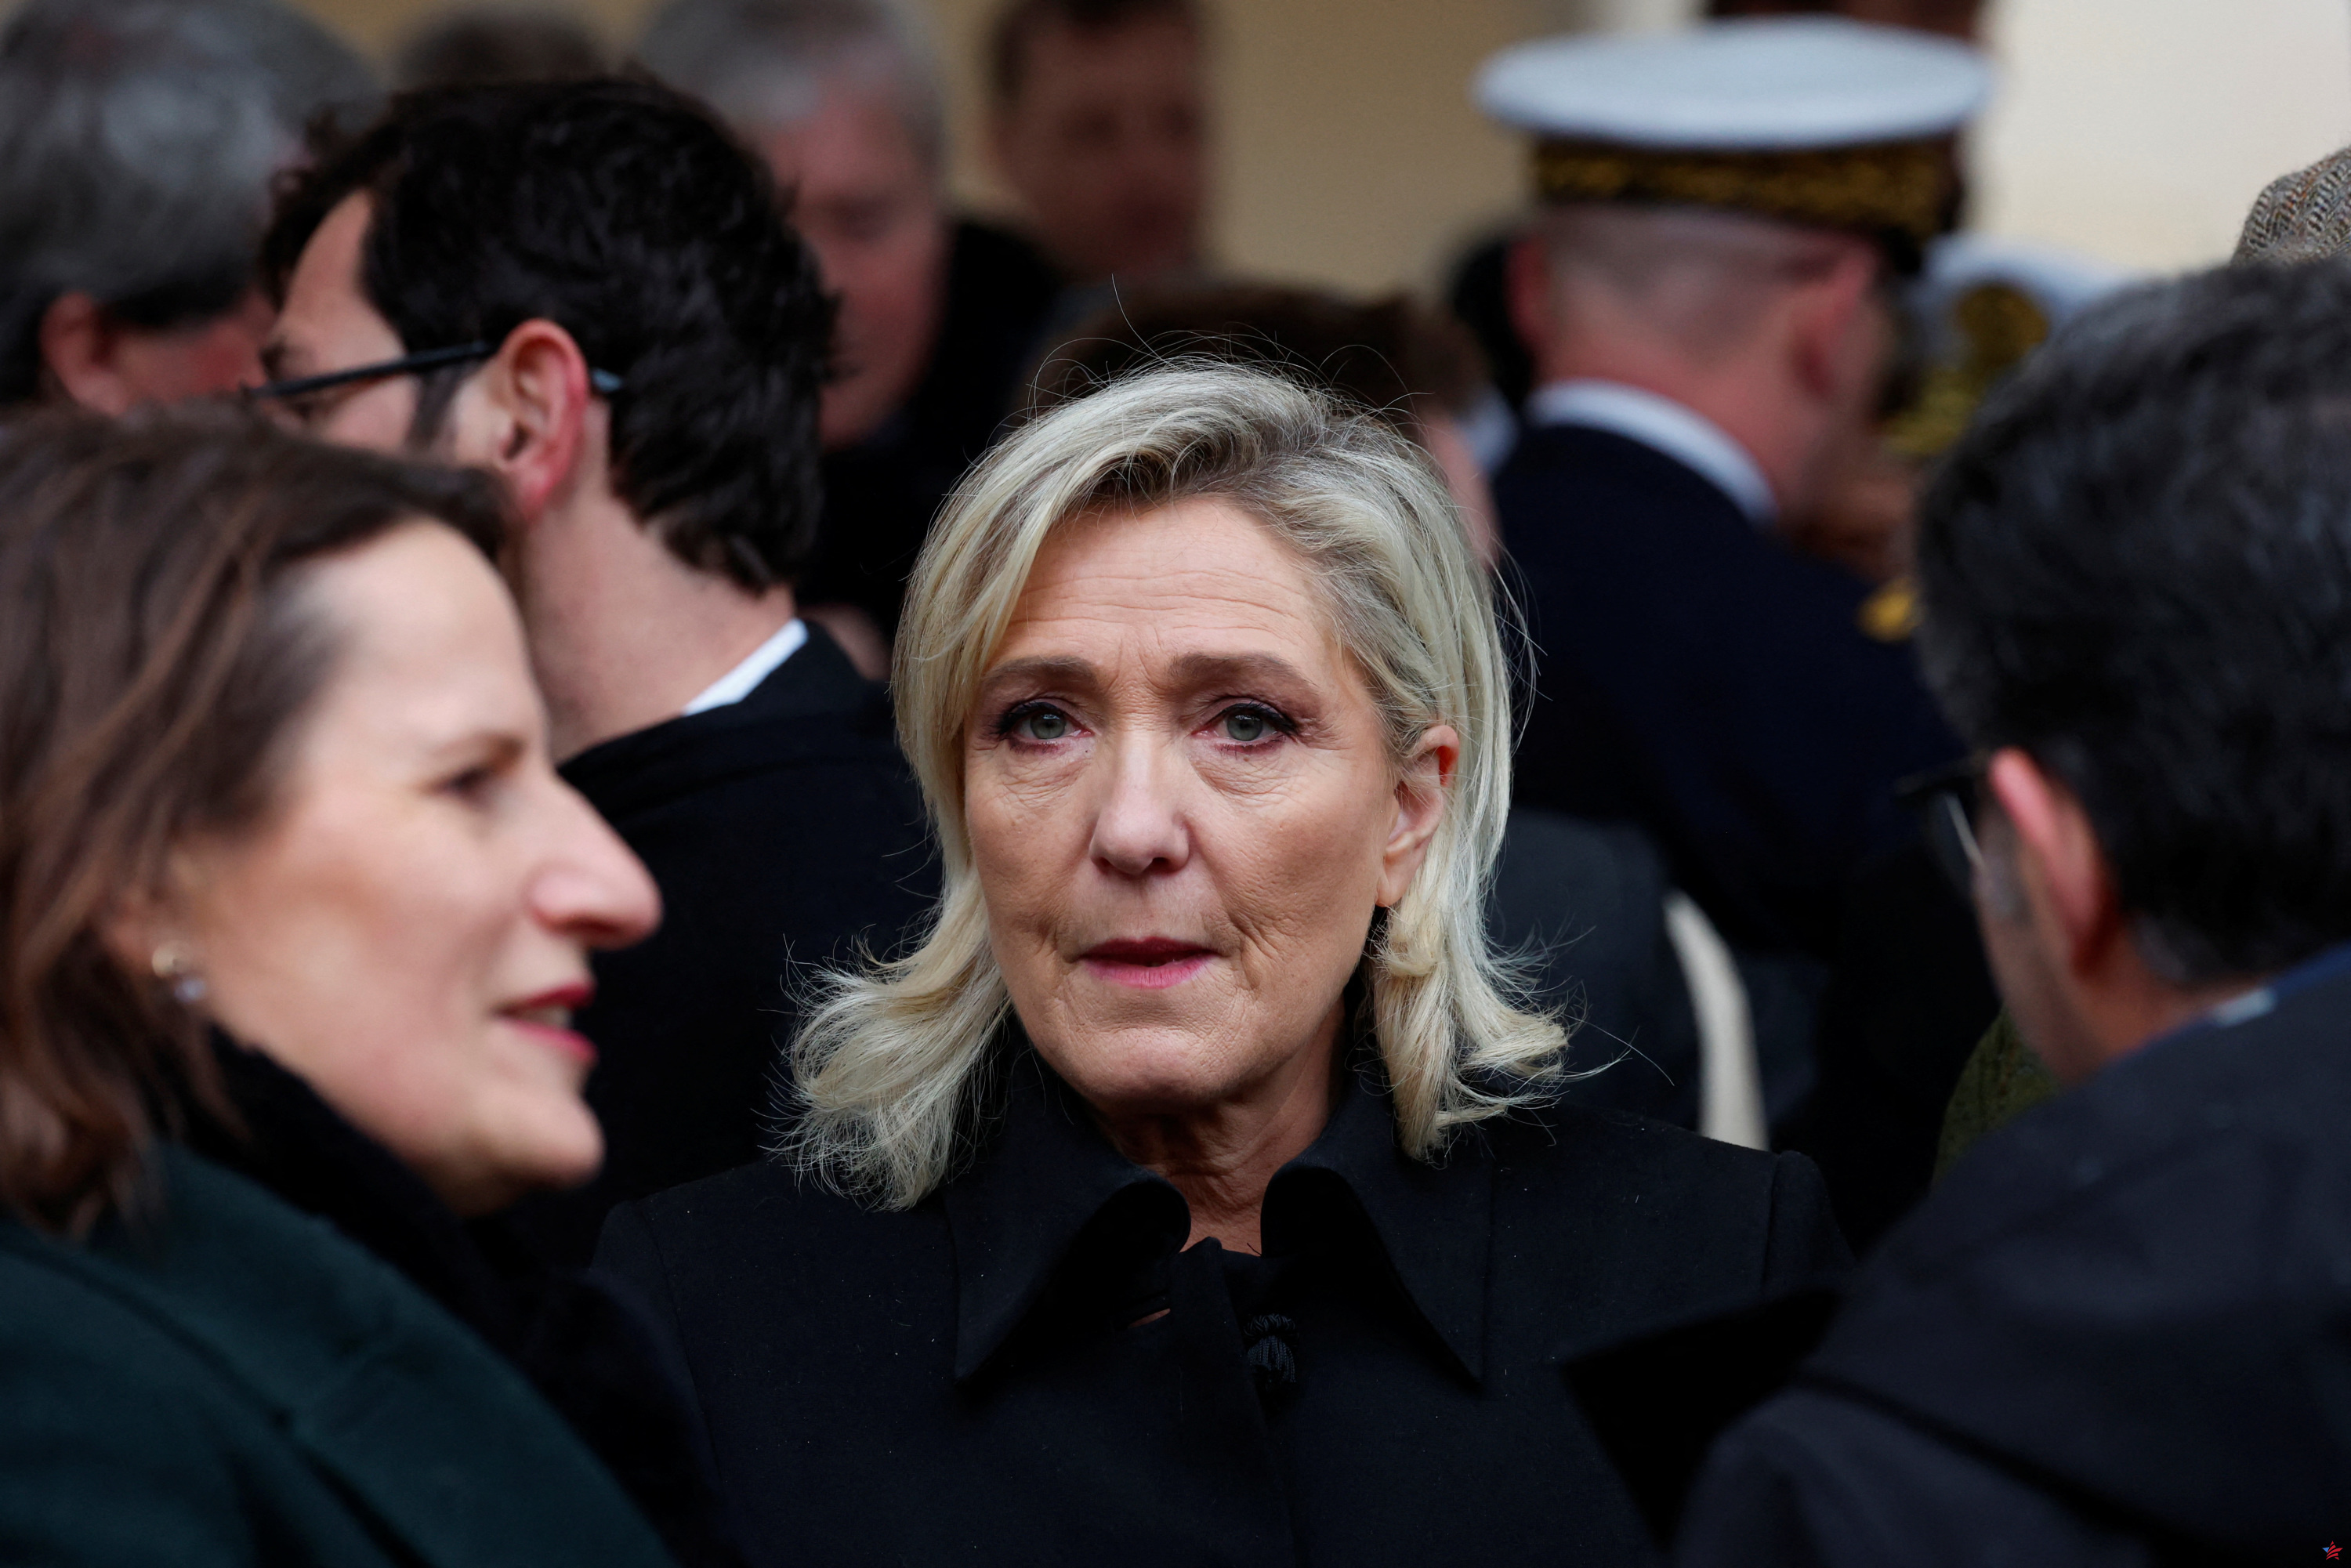 Panteonización de Manouchian: Marine Le Pen asistirá a la ceremonia a pesar de las reservas de Emmanuel Macron